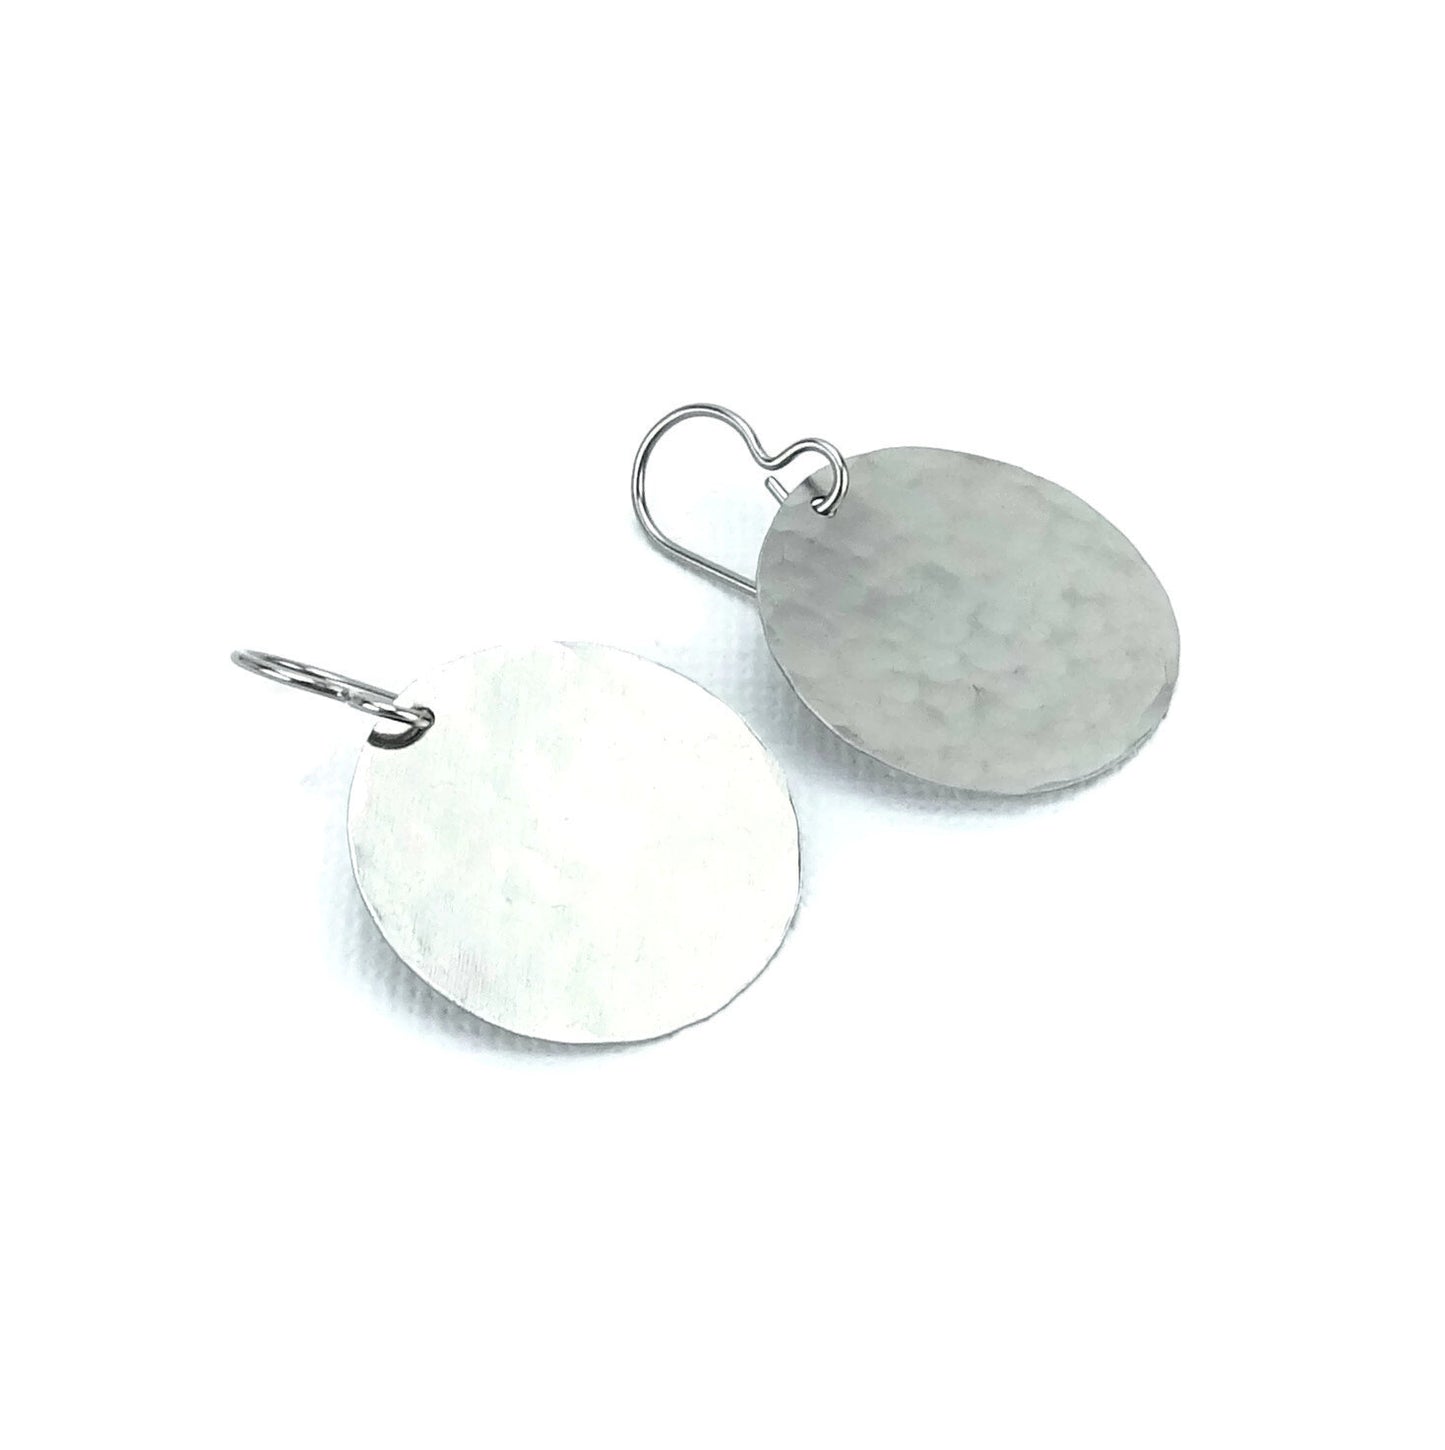 Titanium Earrings Large Hammered Disc, Large Circle Disk Niobium Earrings, Nickel Free Hypoallergenic Disks Earrings for Sensitive Ears